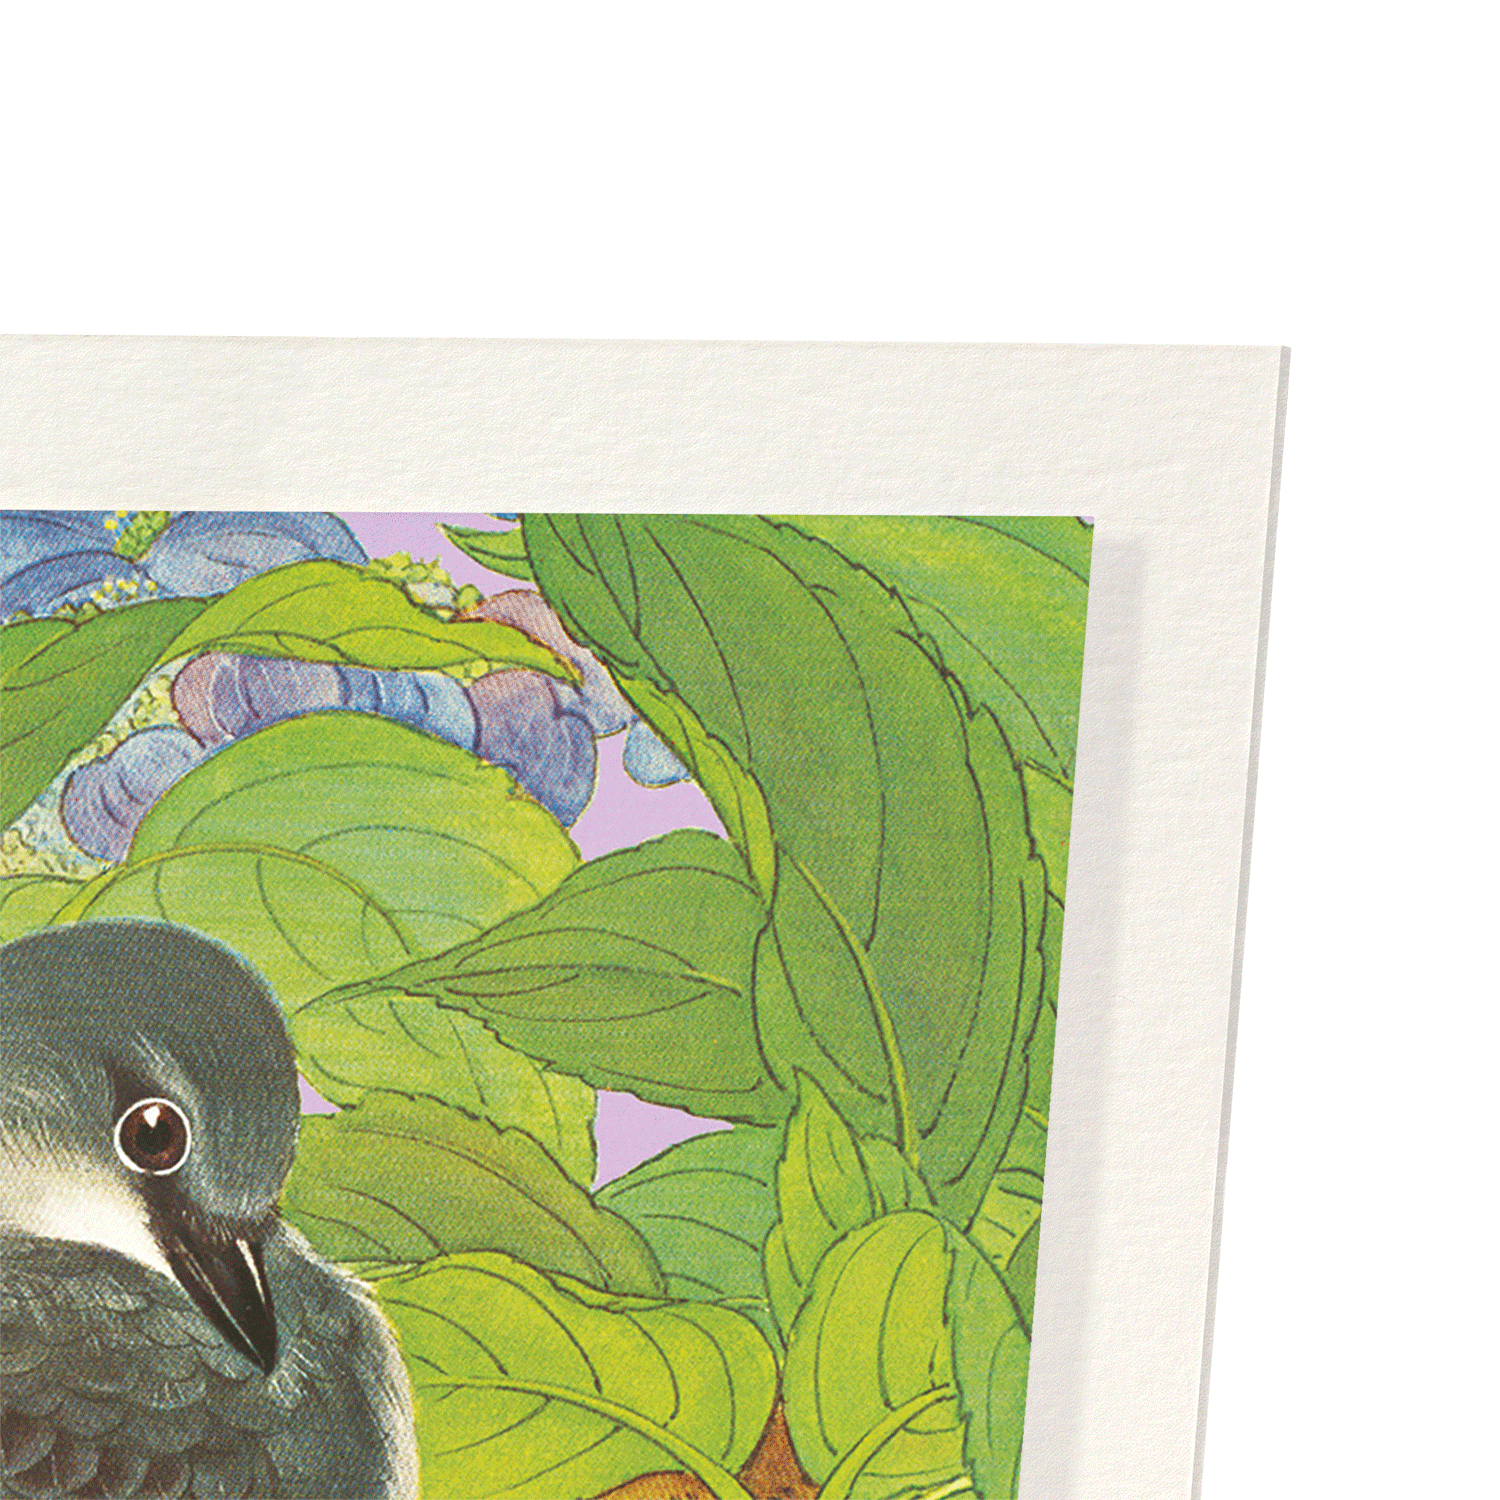 ASHY MINIVET BIRDS WITH HYDRANGEA (C.1930)